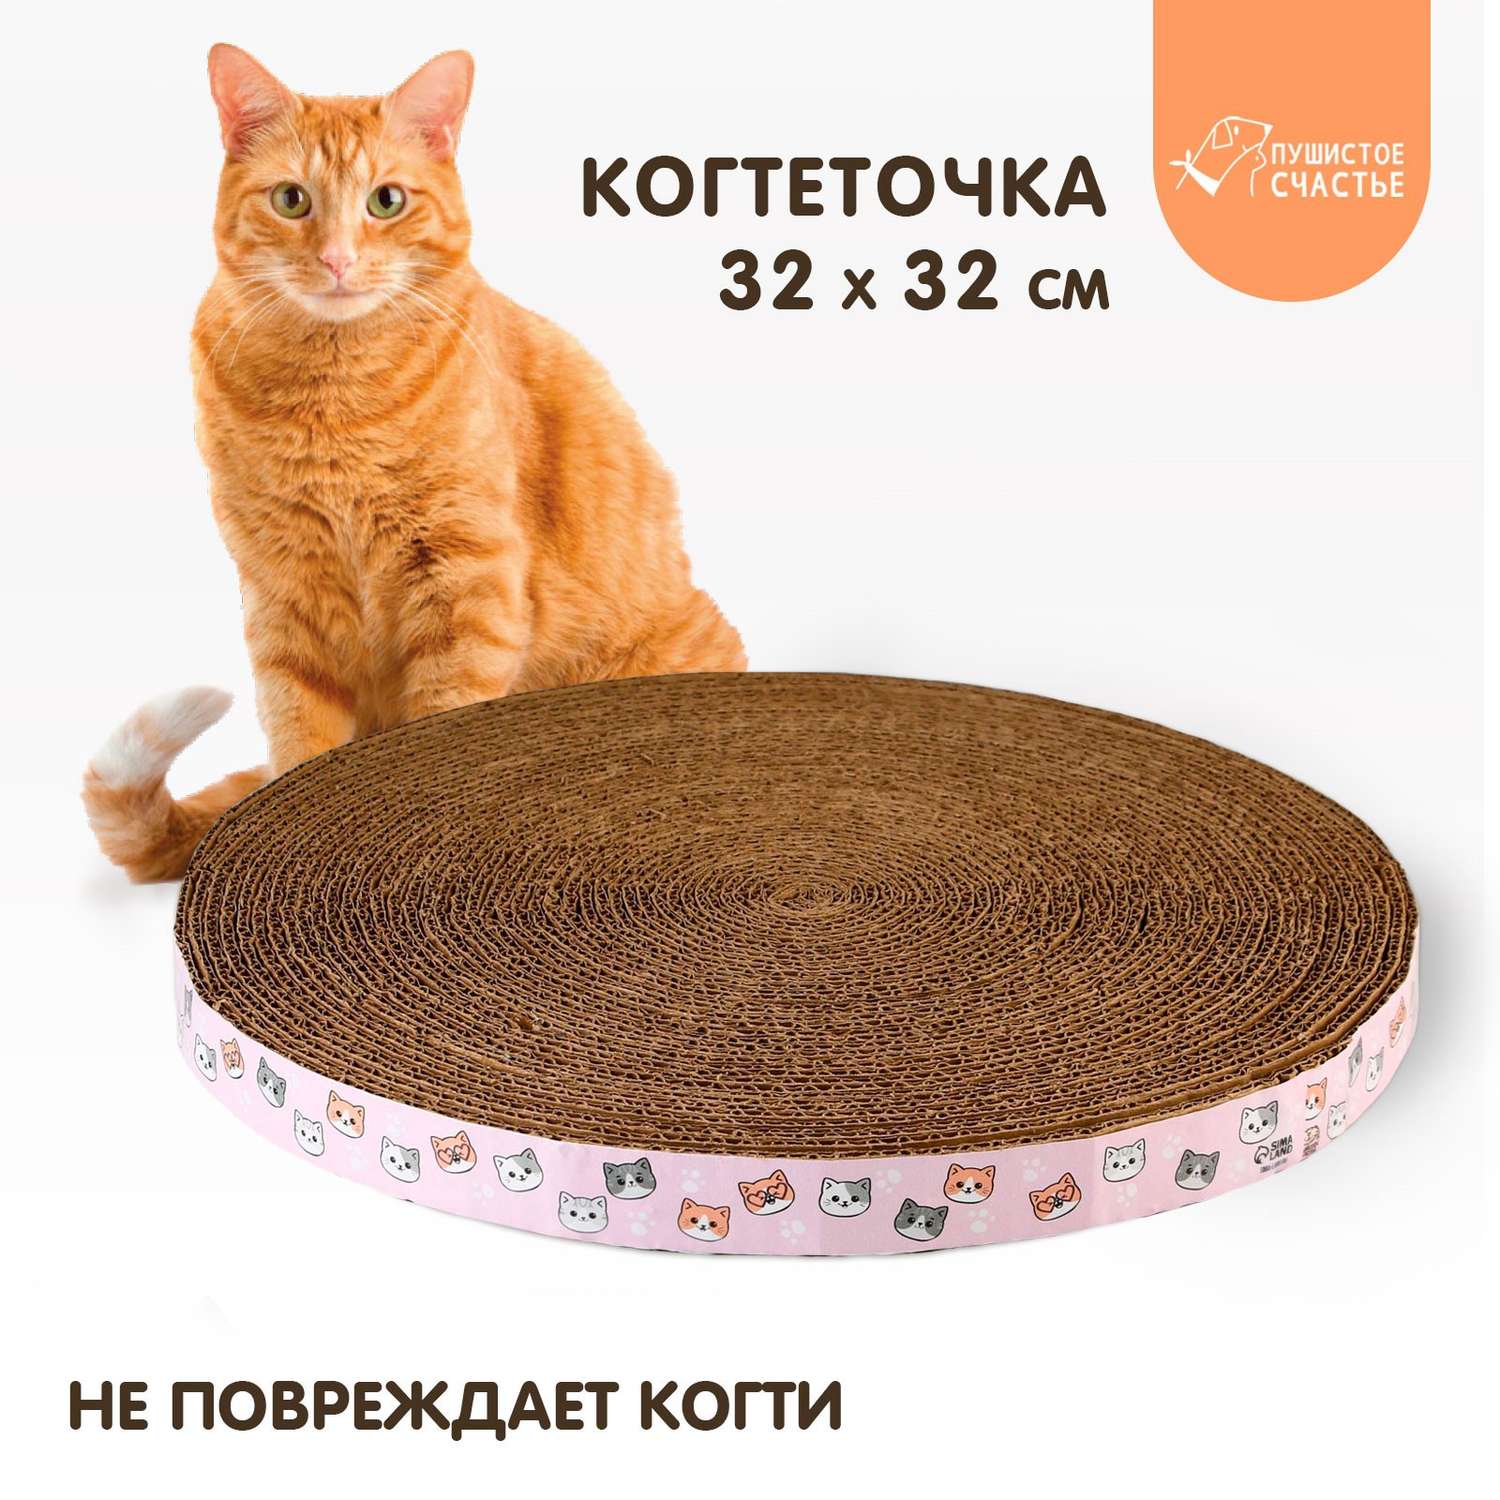 Круглая когтеточка Пушистое счастье «Котики» 32 см - фото 1